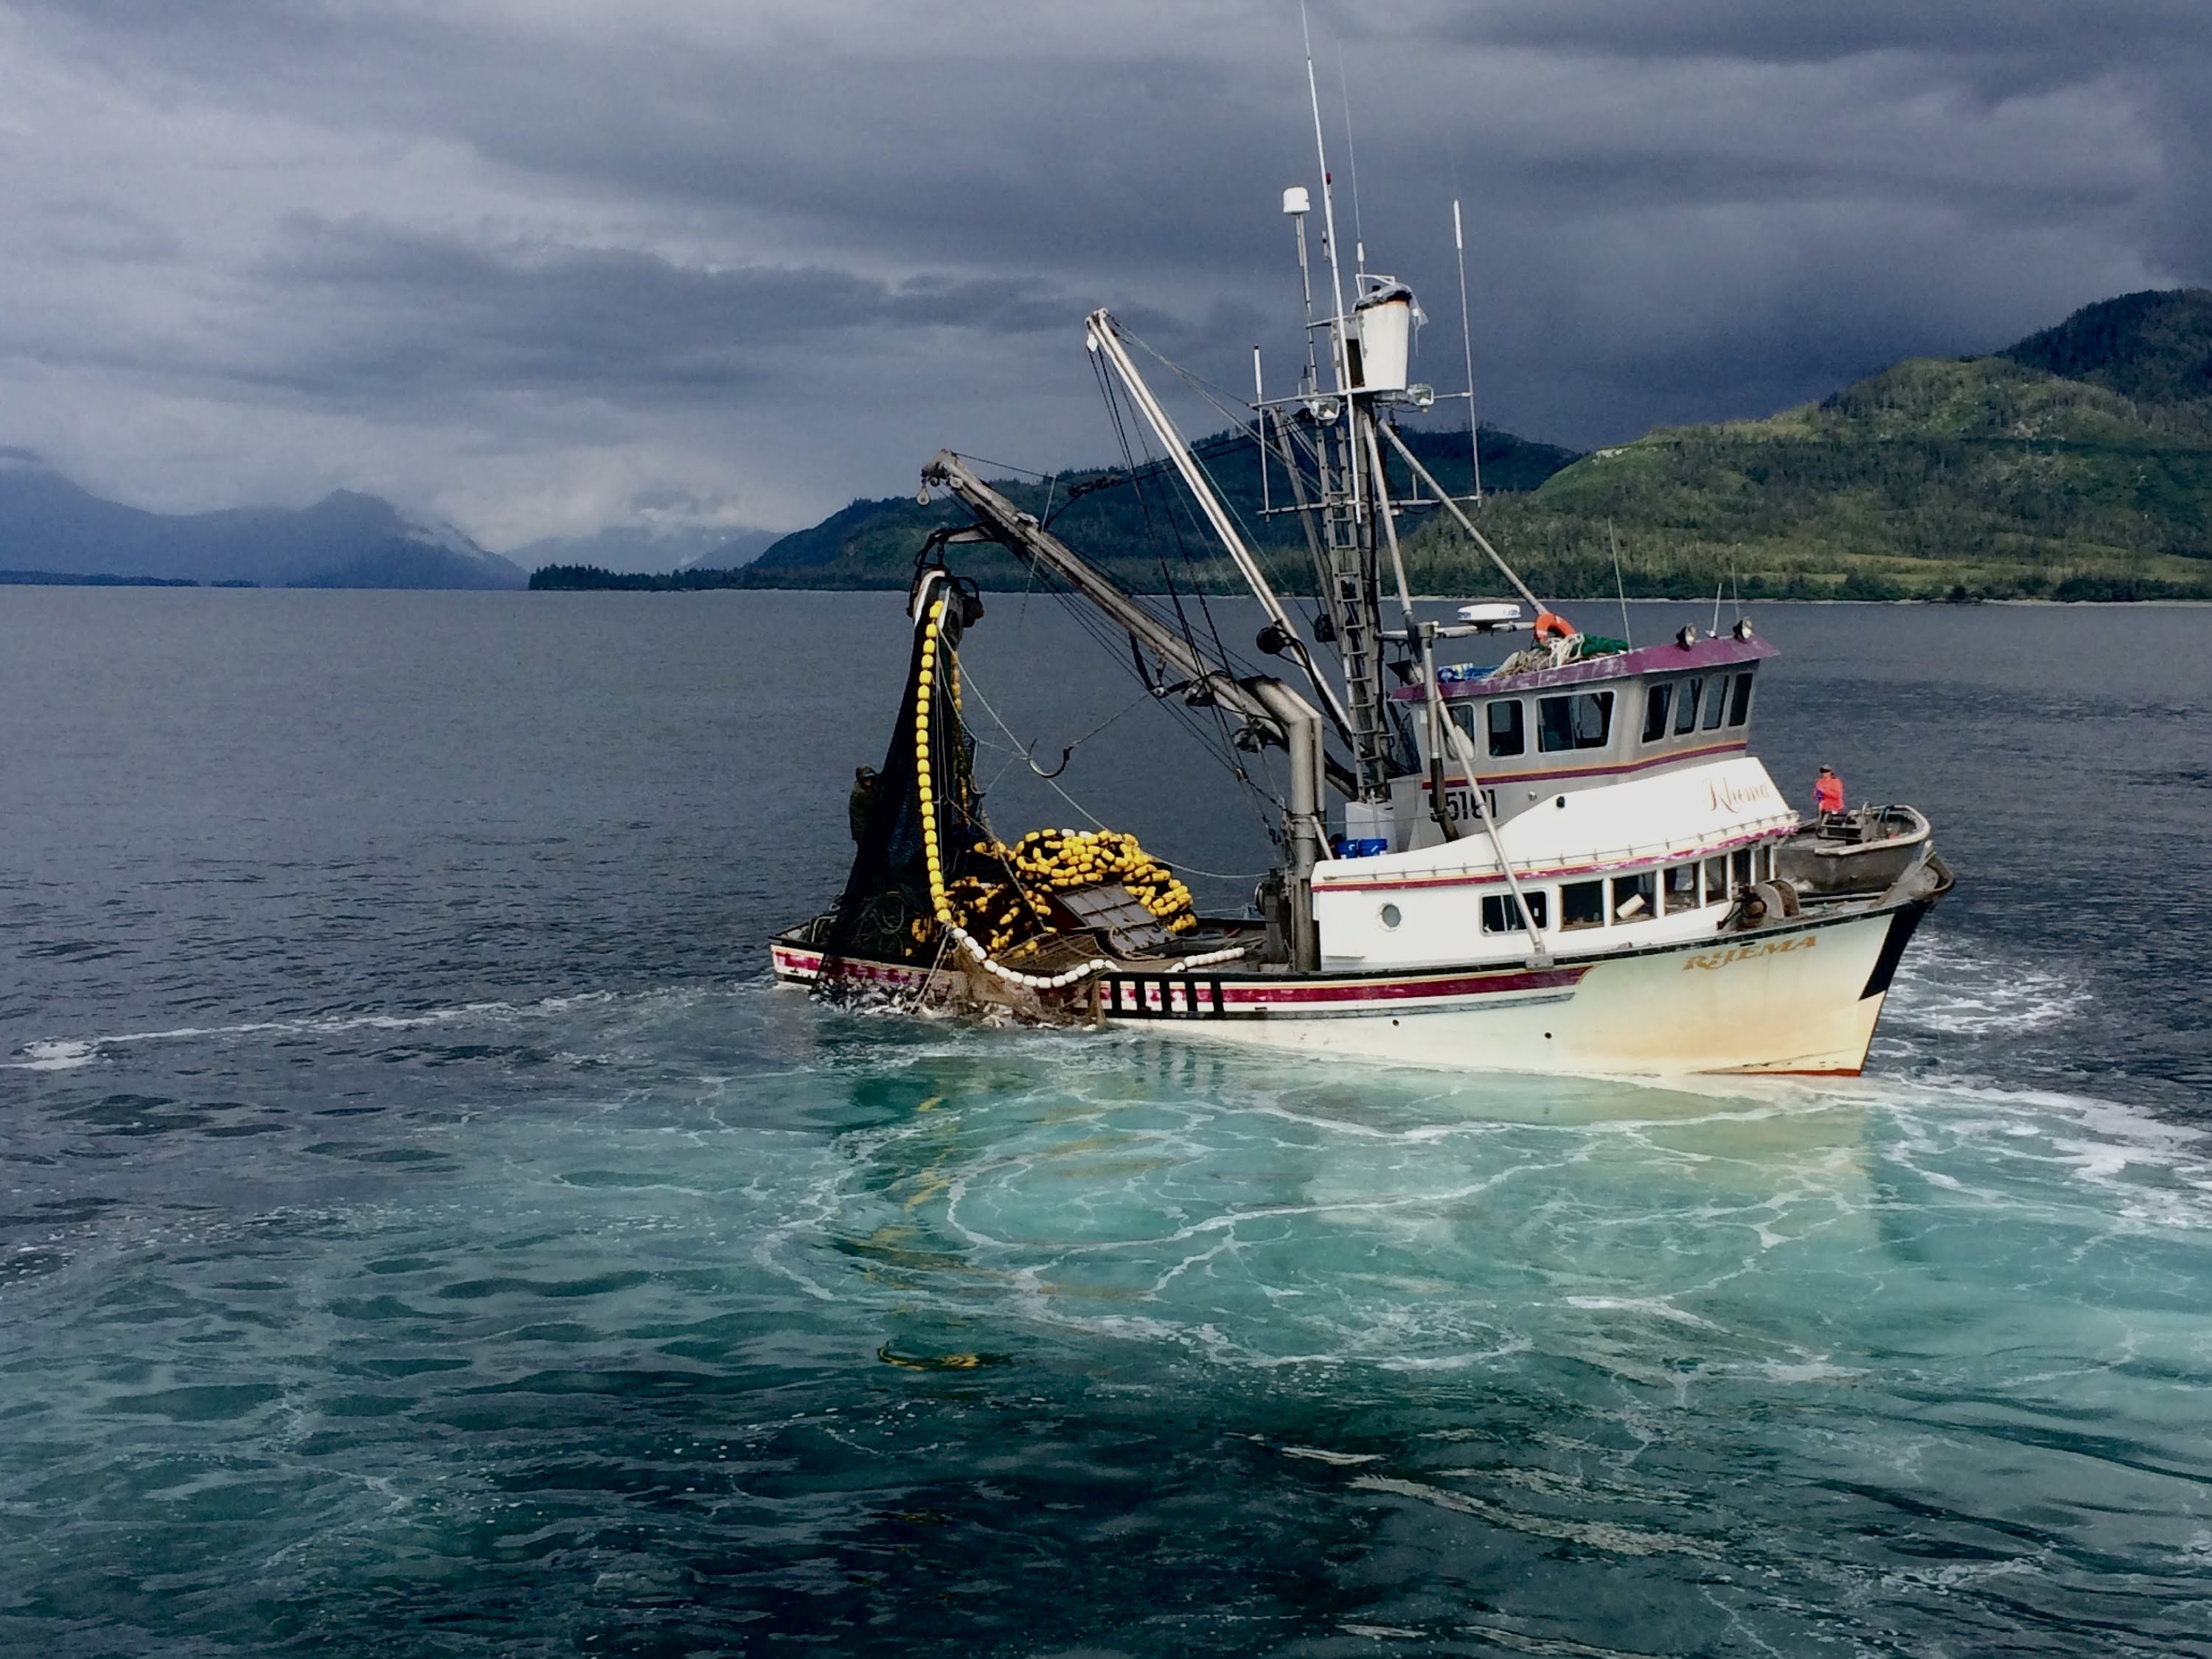 Аляска 2015. Рыболовное судно Аляска. Рыбалка на Аляске. Рыбный промысел на Аляске. Аляска море рыбалка.